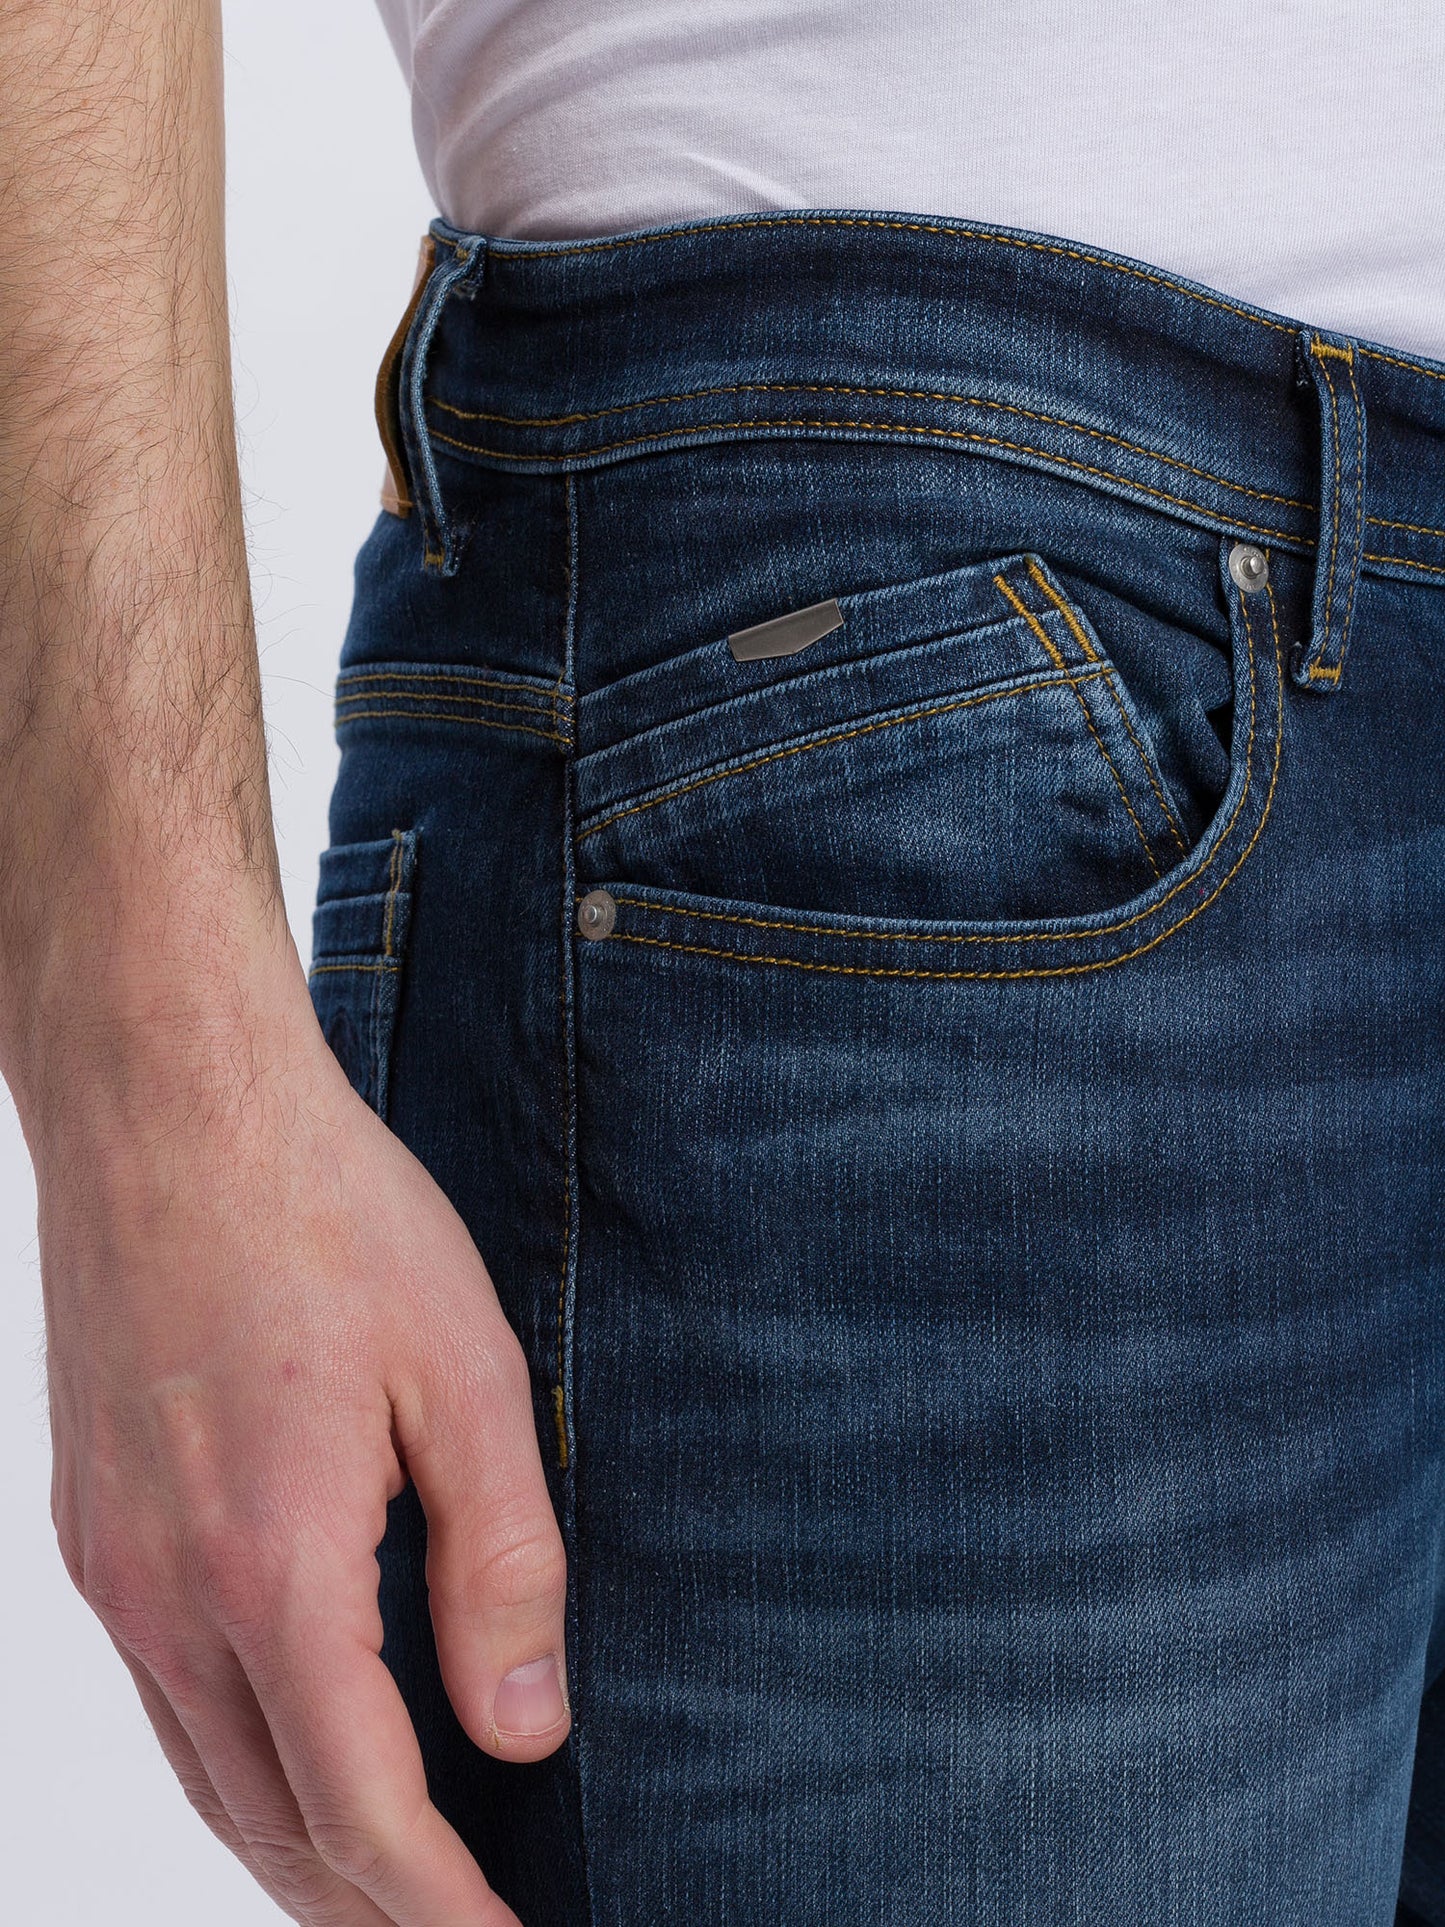 Jimi Herren Jeans Slim Fit Regular Waist Tapered Leg dunkelblau